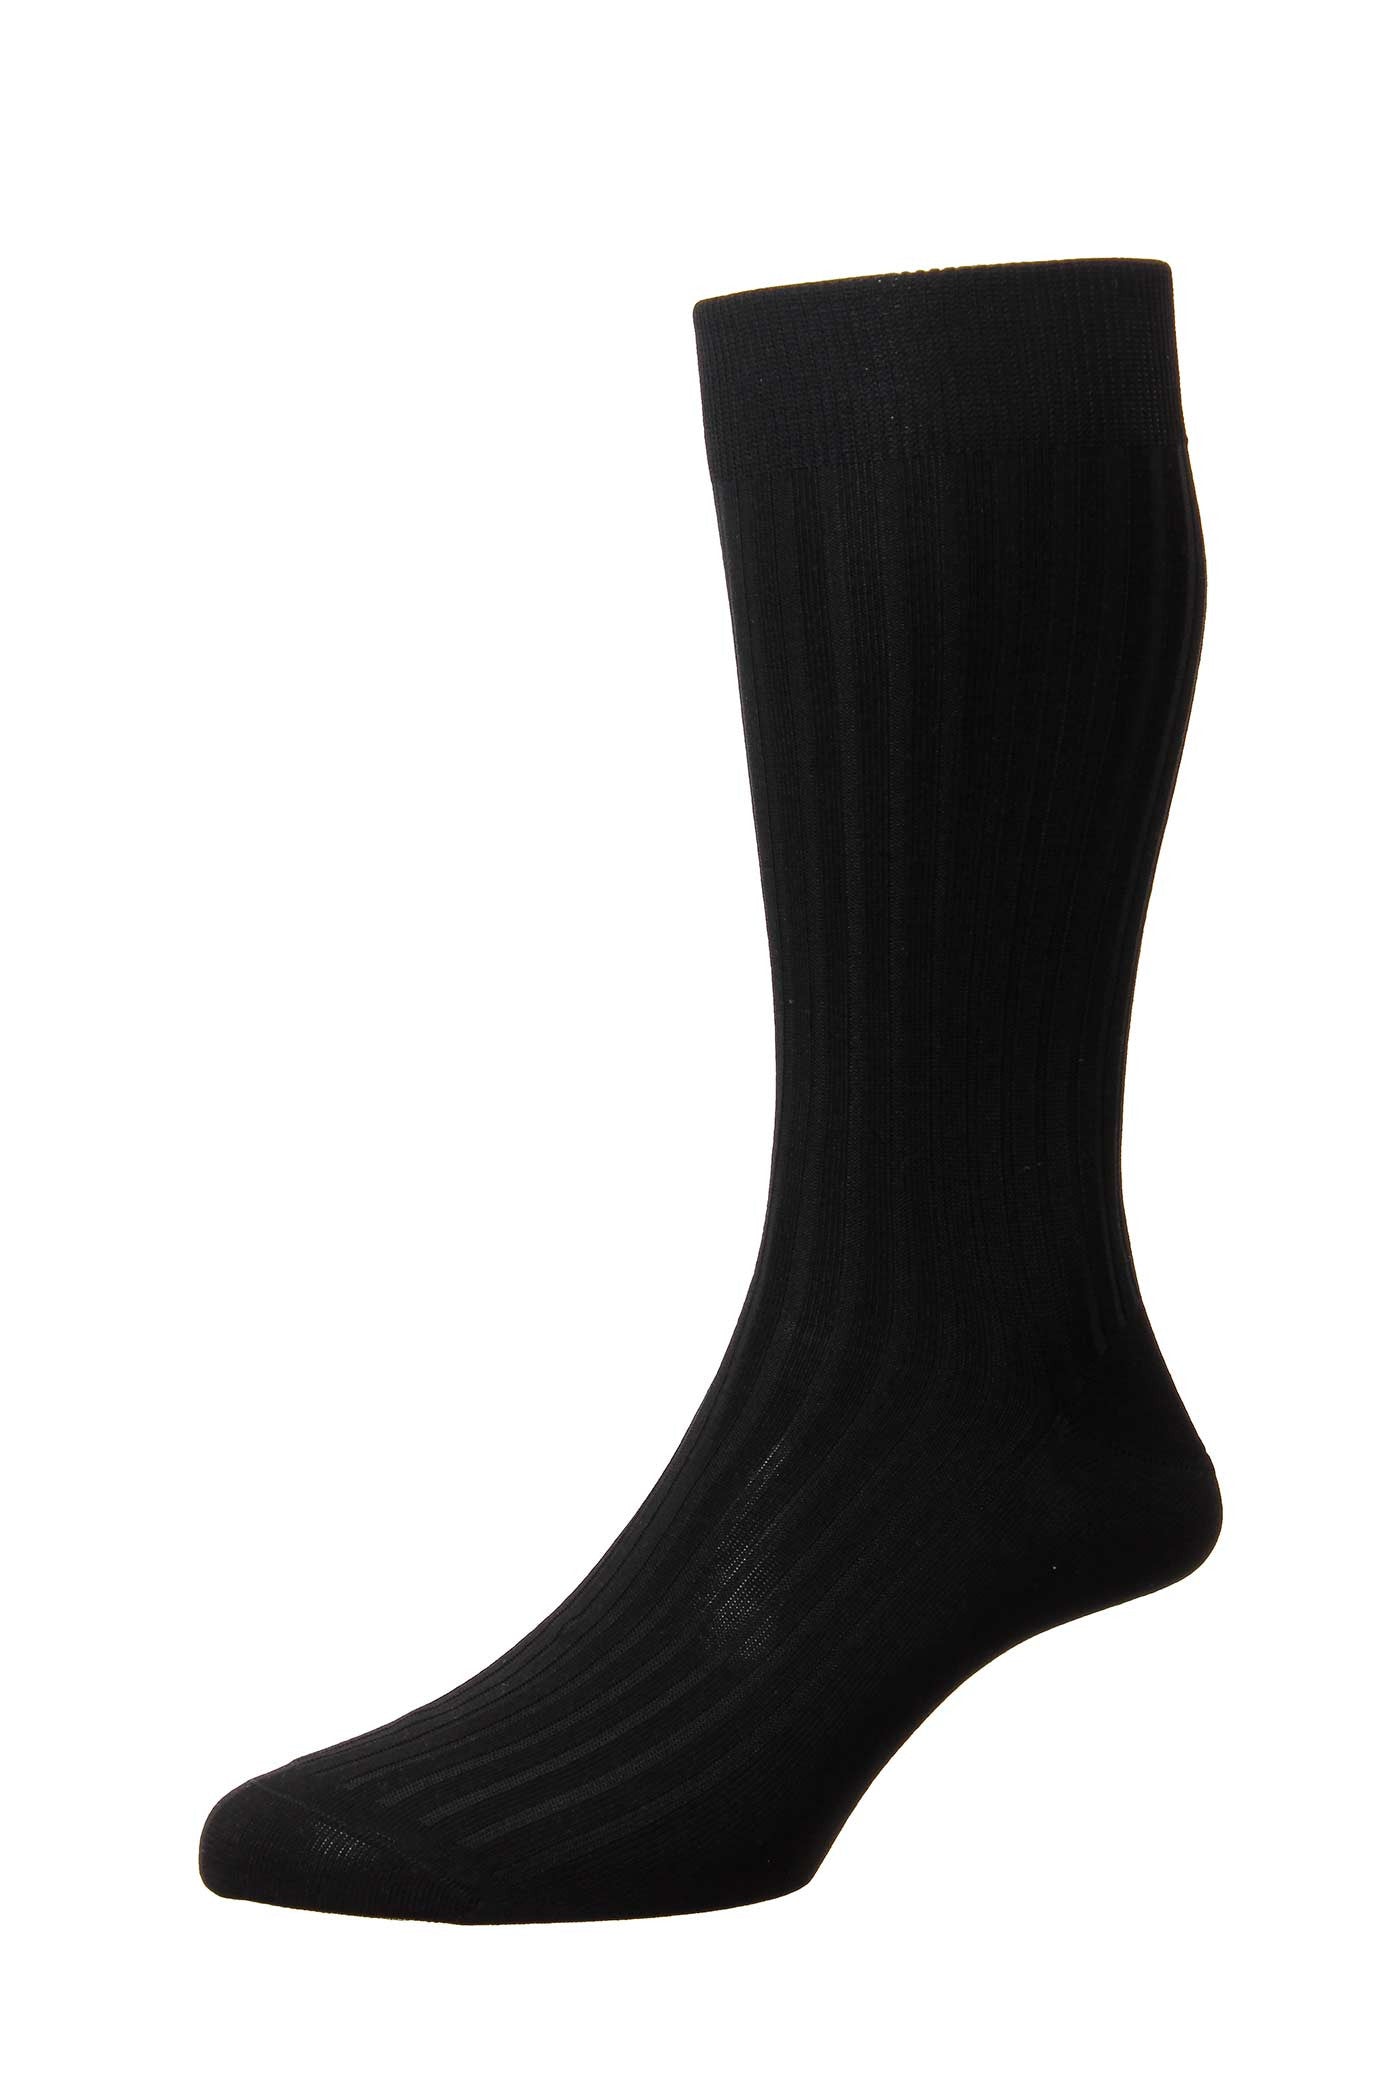 Men's Socks - Danvers (5614) 5x3 Rib Fil d'Ecosse / Cotton Lisle - BLACK